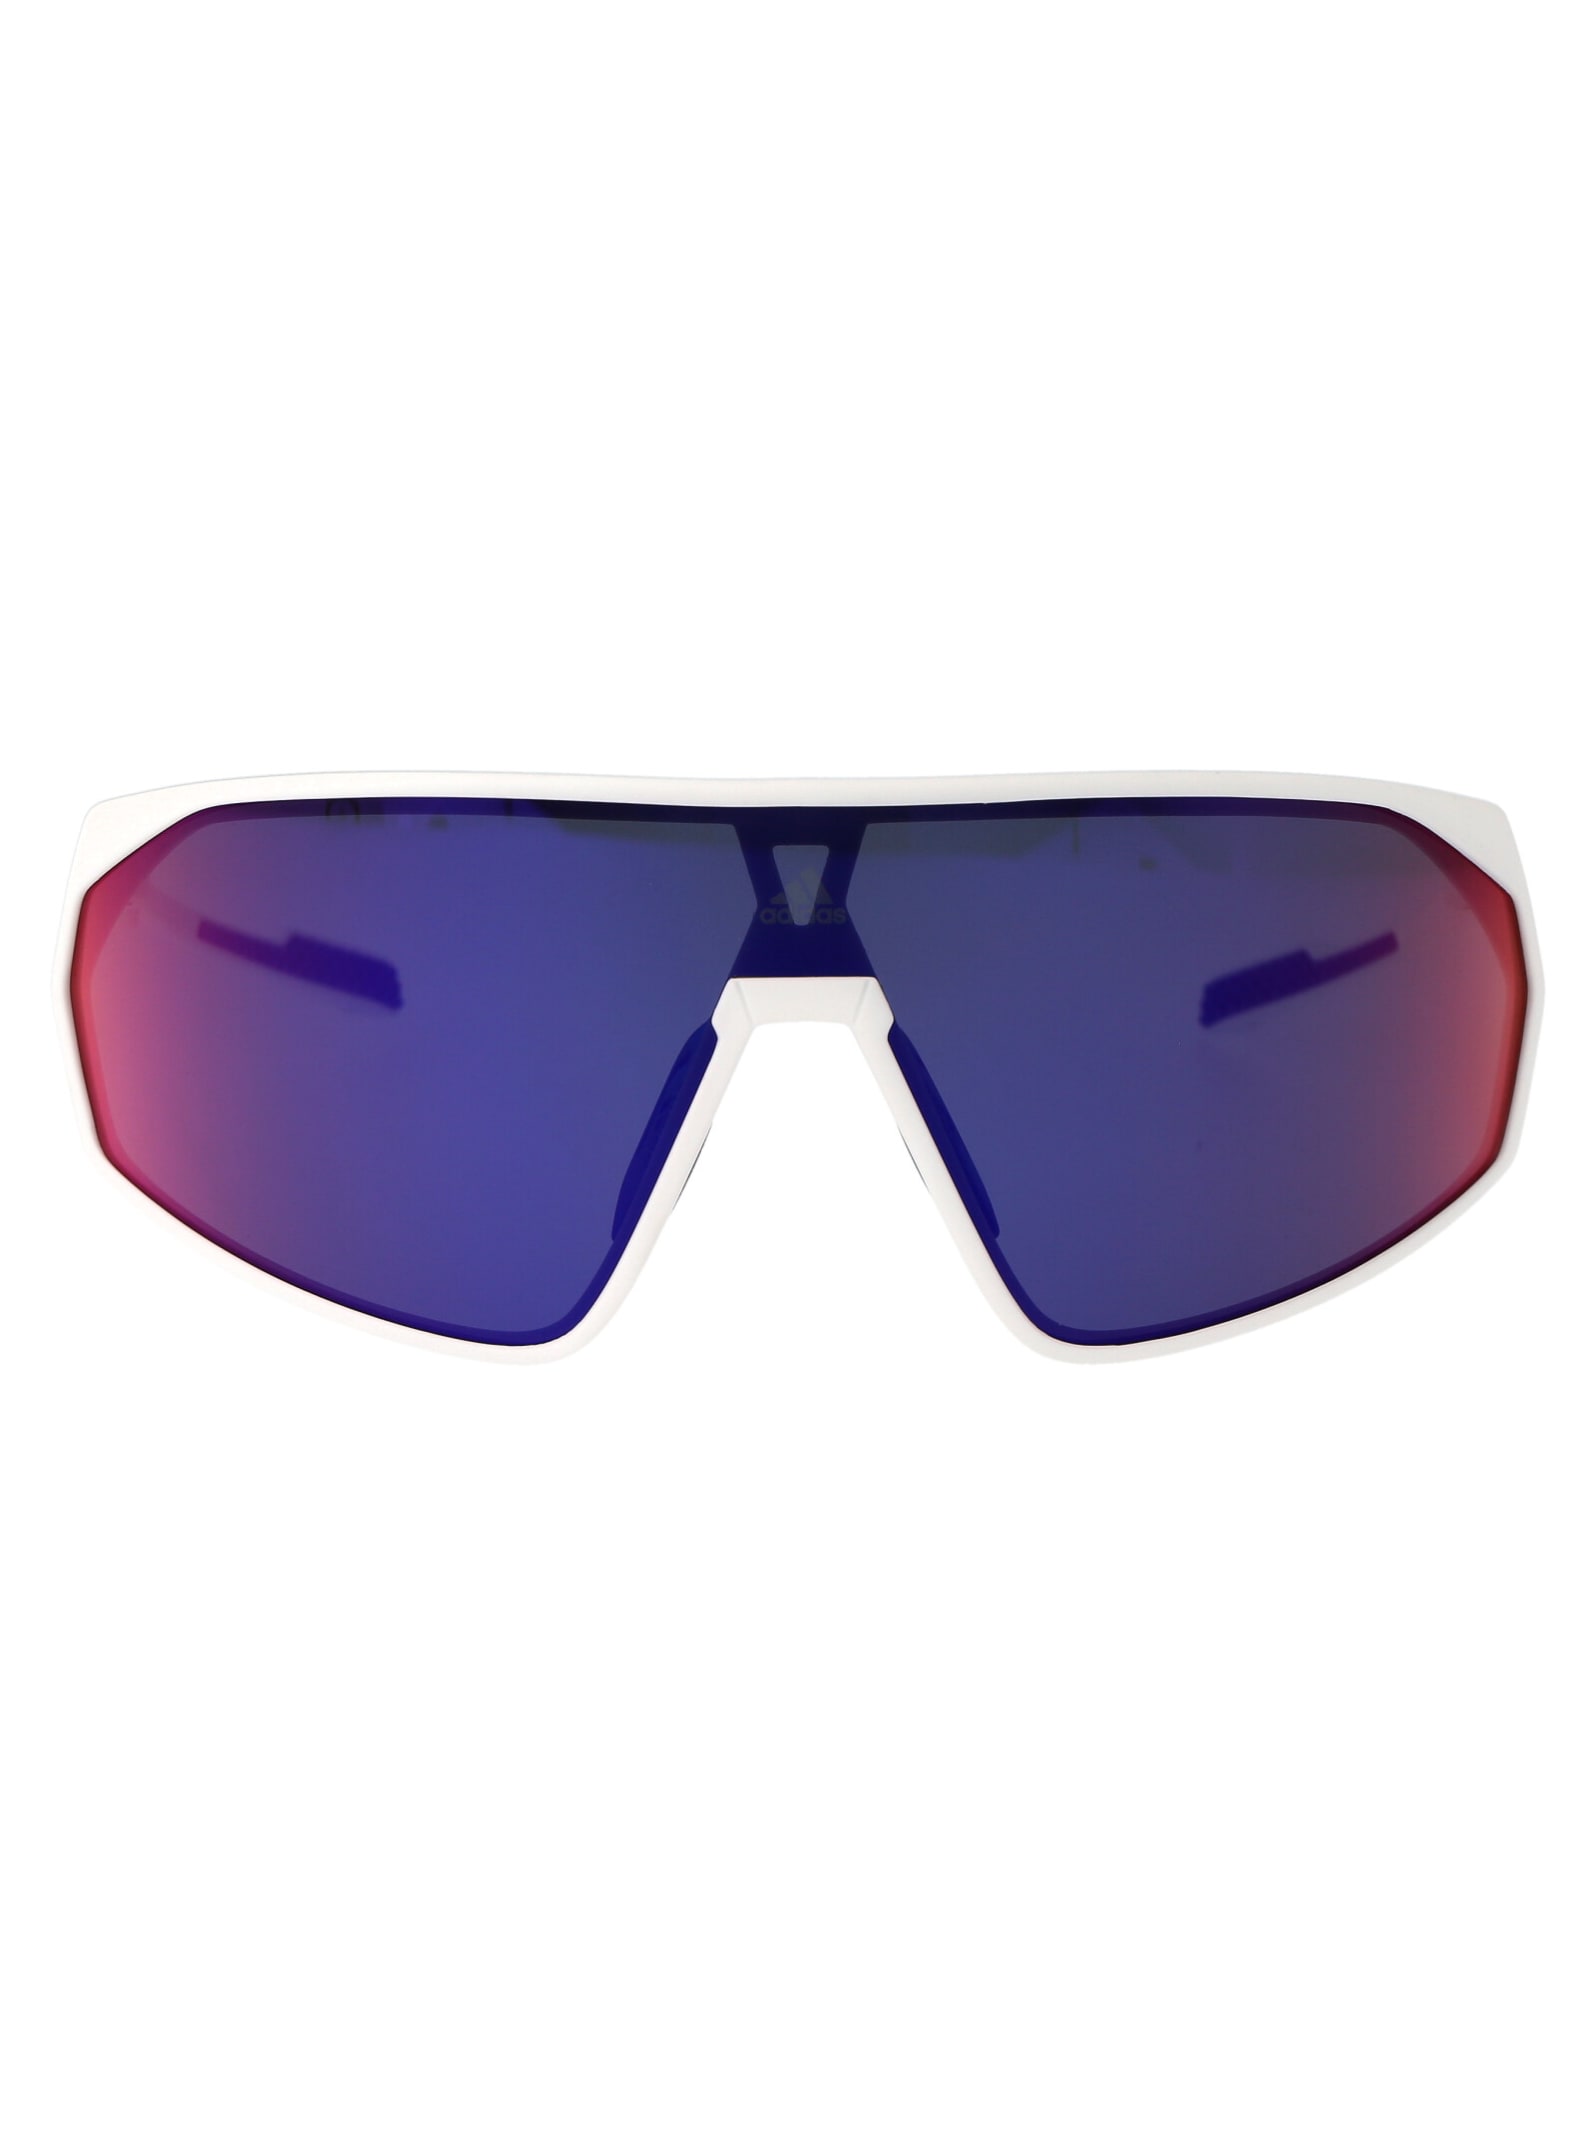 Adidas Originals Prfm Shield Sunglasses In 21z Bianco/viola Grad E/o Specchiato